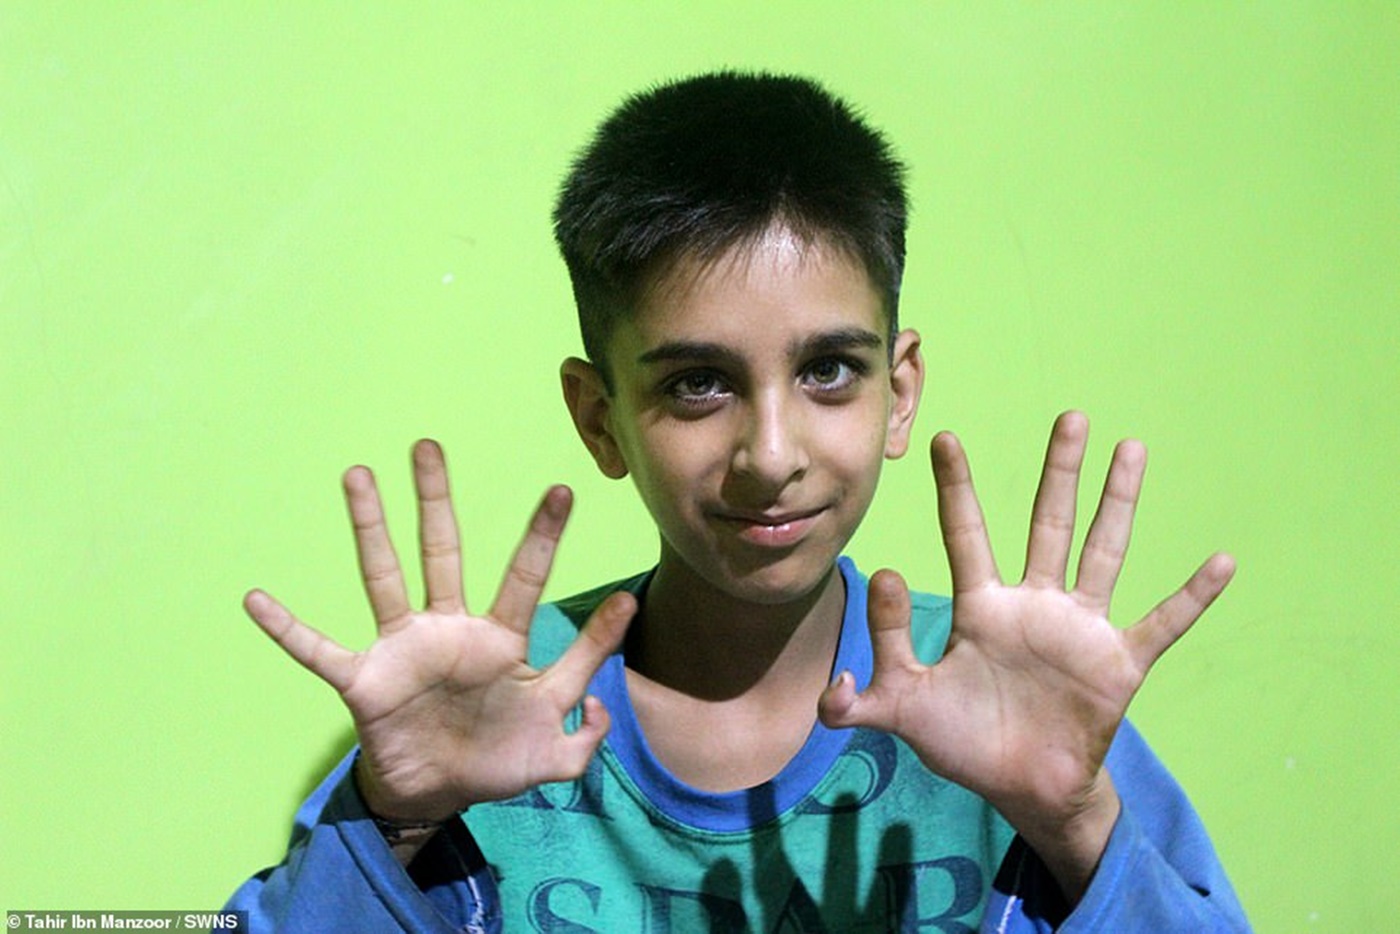 Povestea băiatului care s-a născut cu 12 degete la mâini! Părinții nu vor să îl opereze